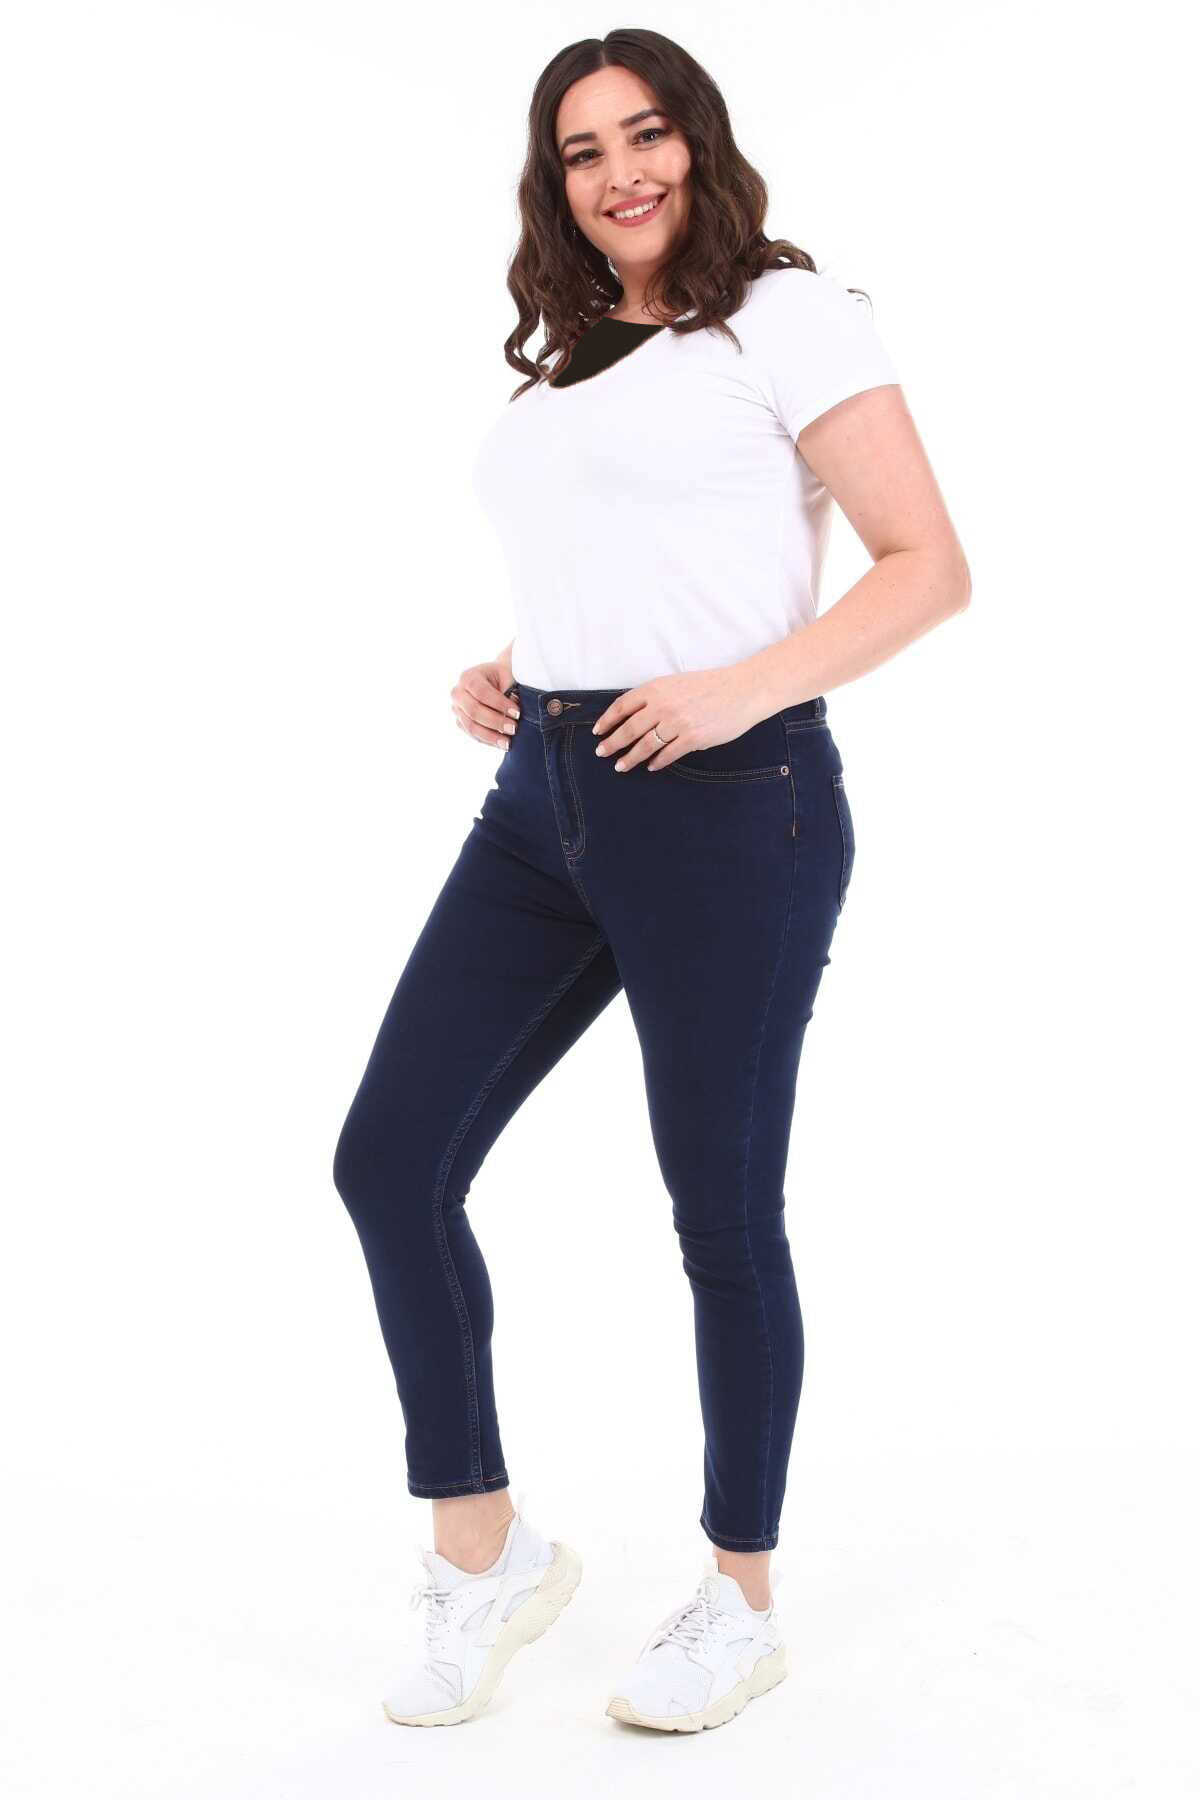 شلوار جین لوله ای سایز بزرگ زنانه سرمه ای تیره برند CEDY DENIM